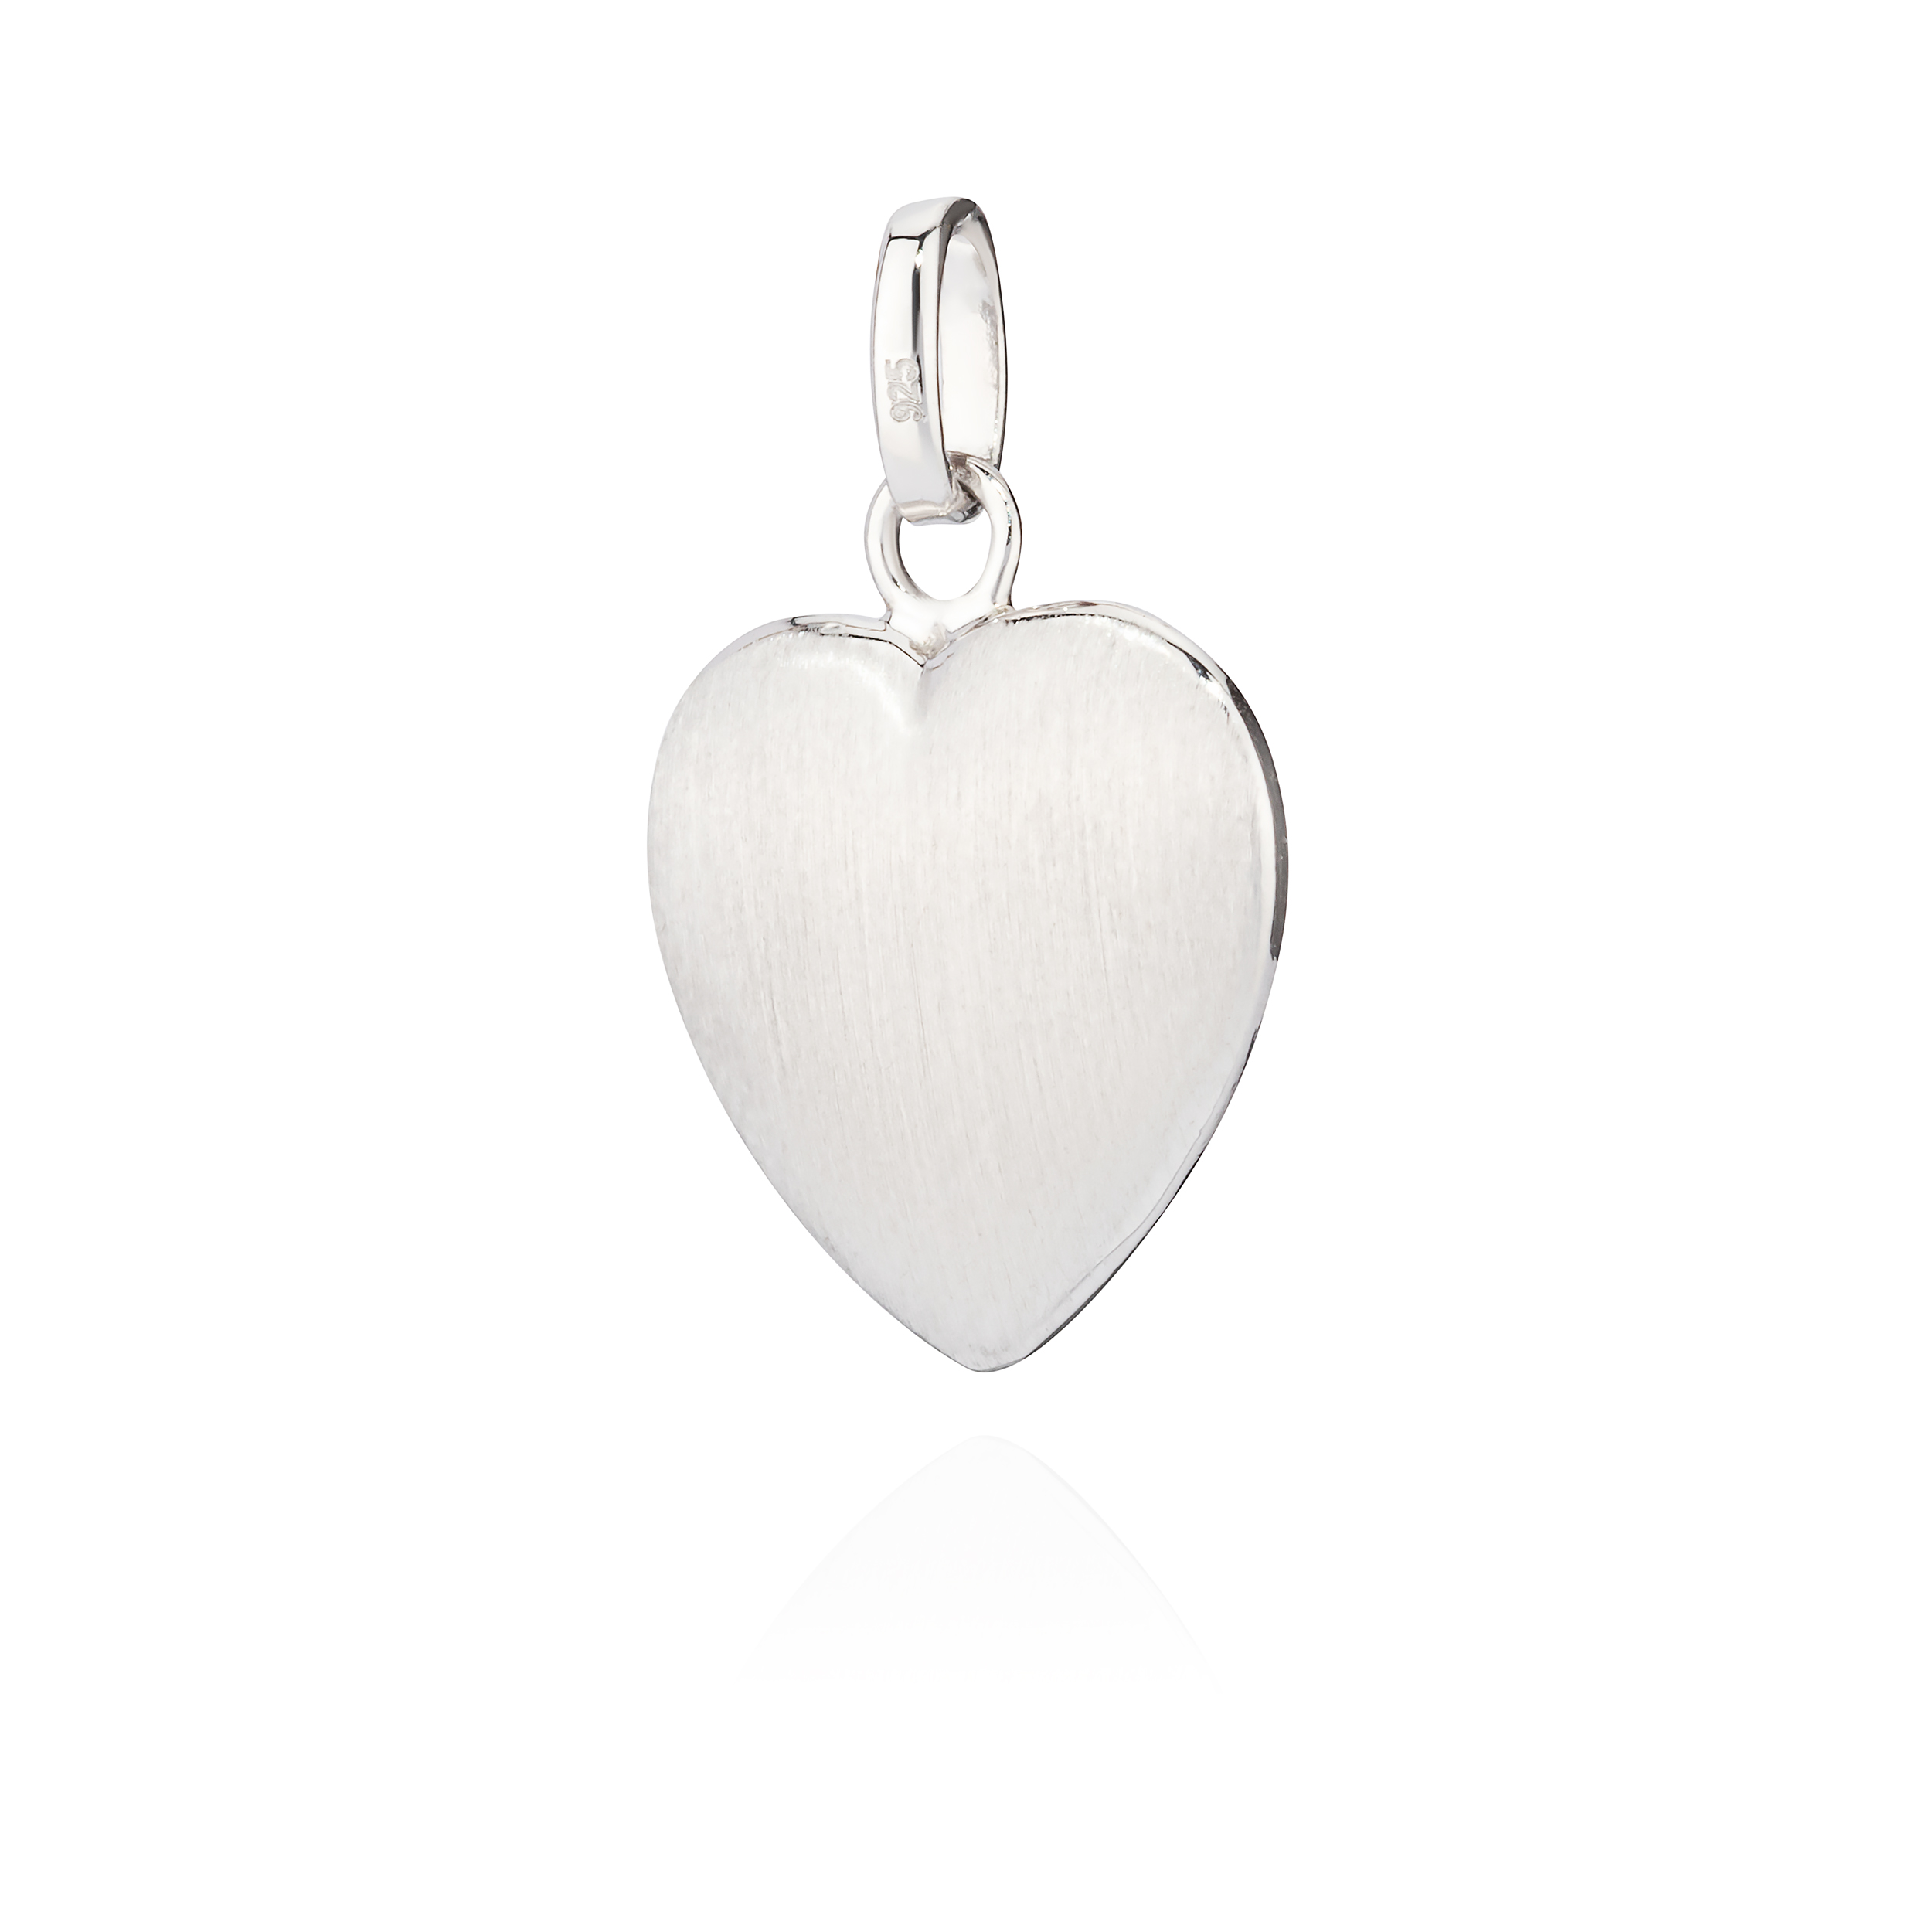 [Wir führen viele!] Kettenanhänger kleines Herz 925 Silber glanz-matt anlaufgeschützt eBay | Amulett